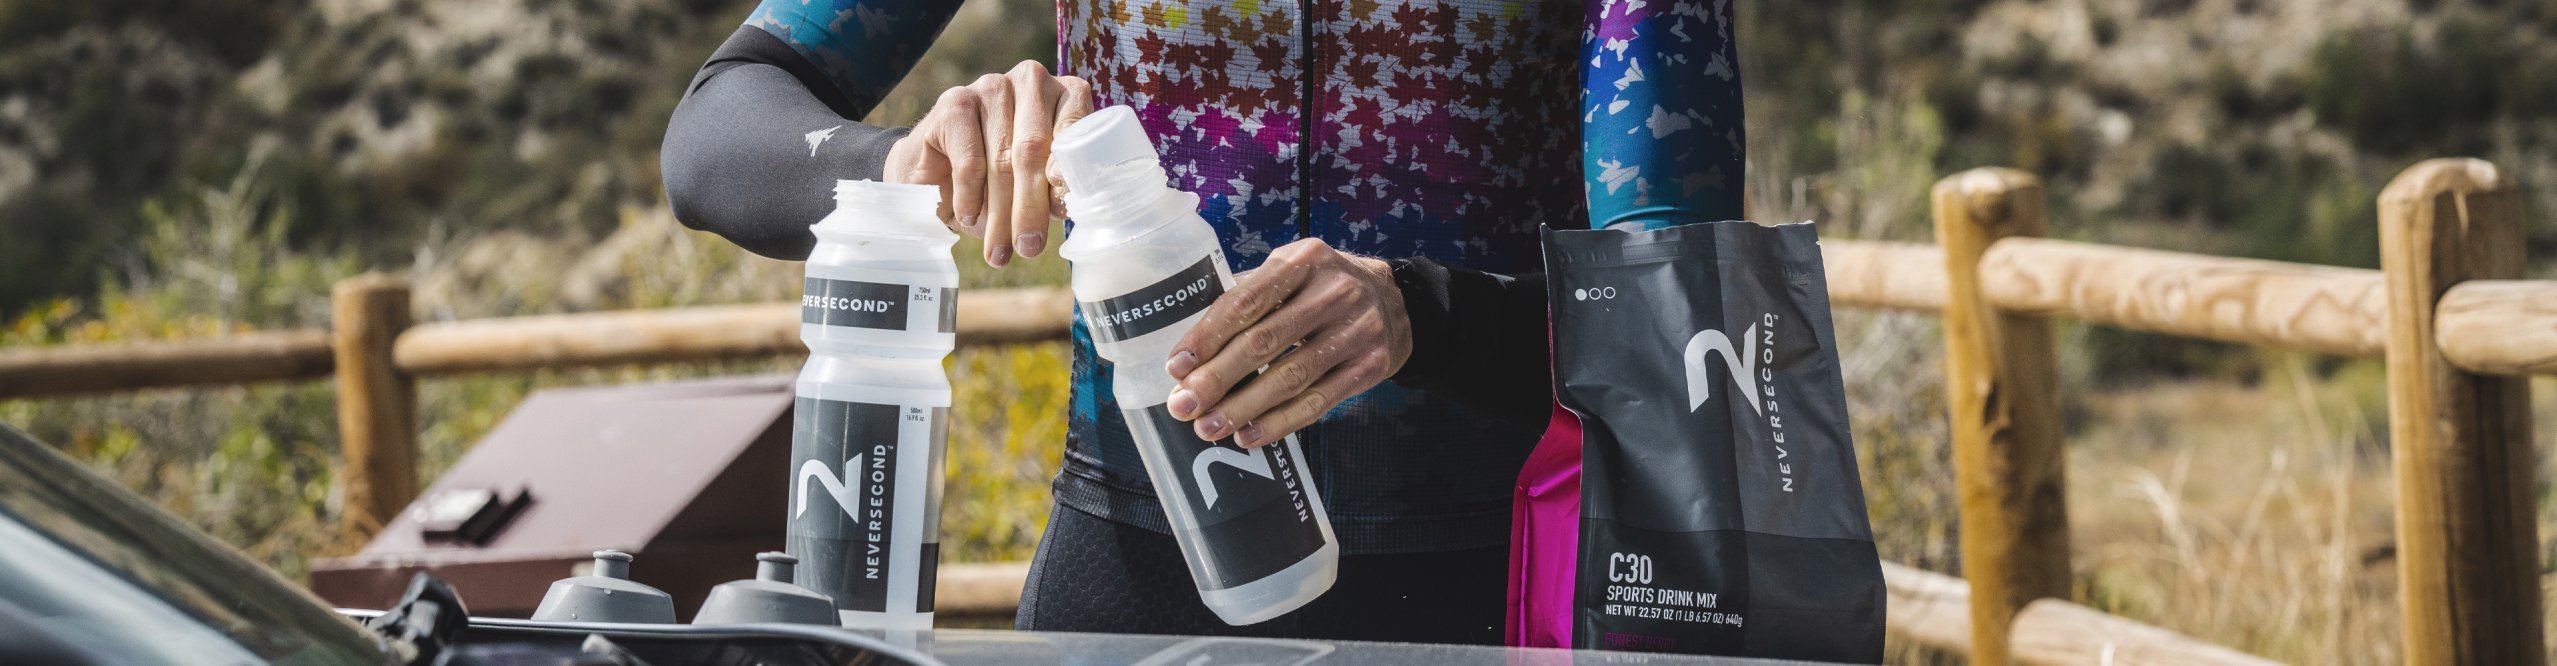 Radfahrer füllt Neversecond Energy Pulver in Trinkflaschen 